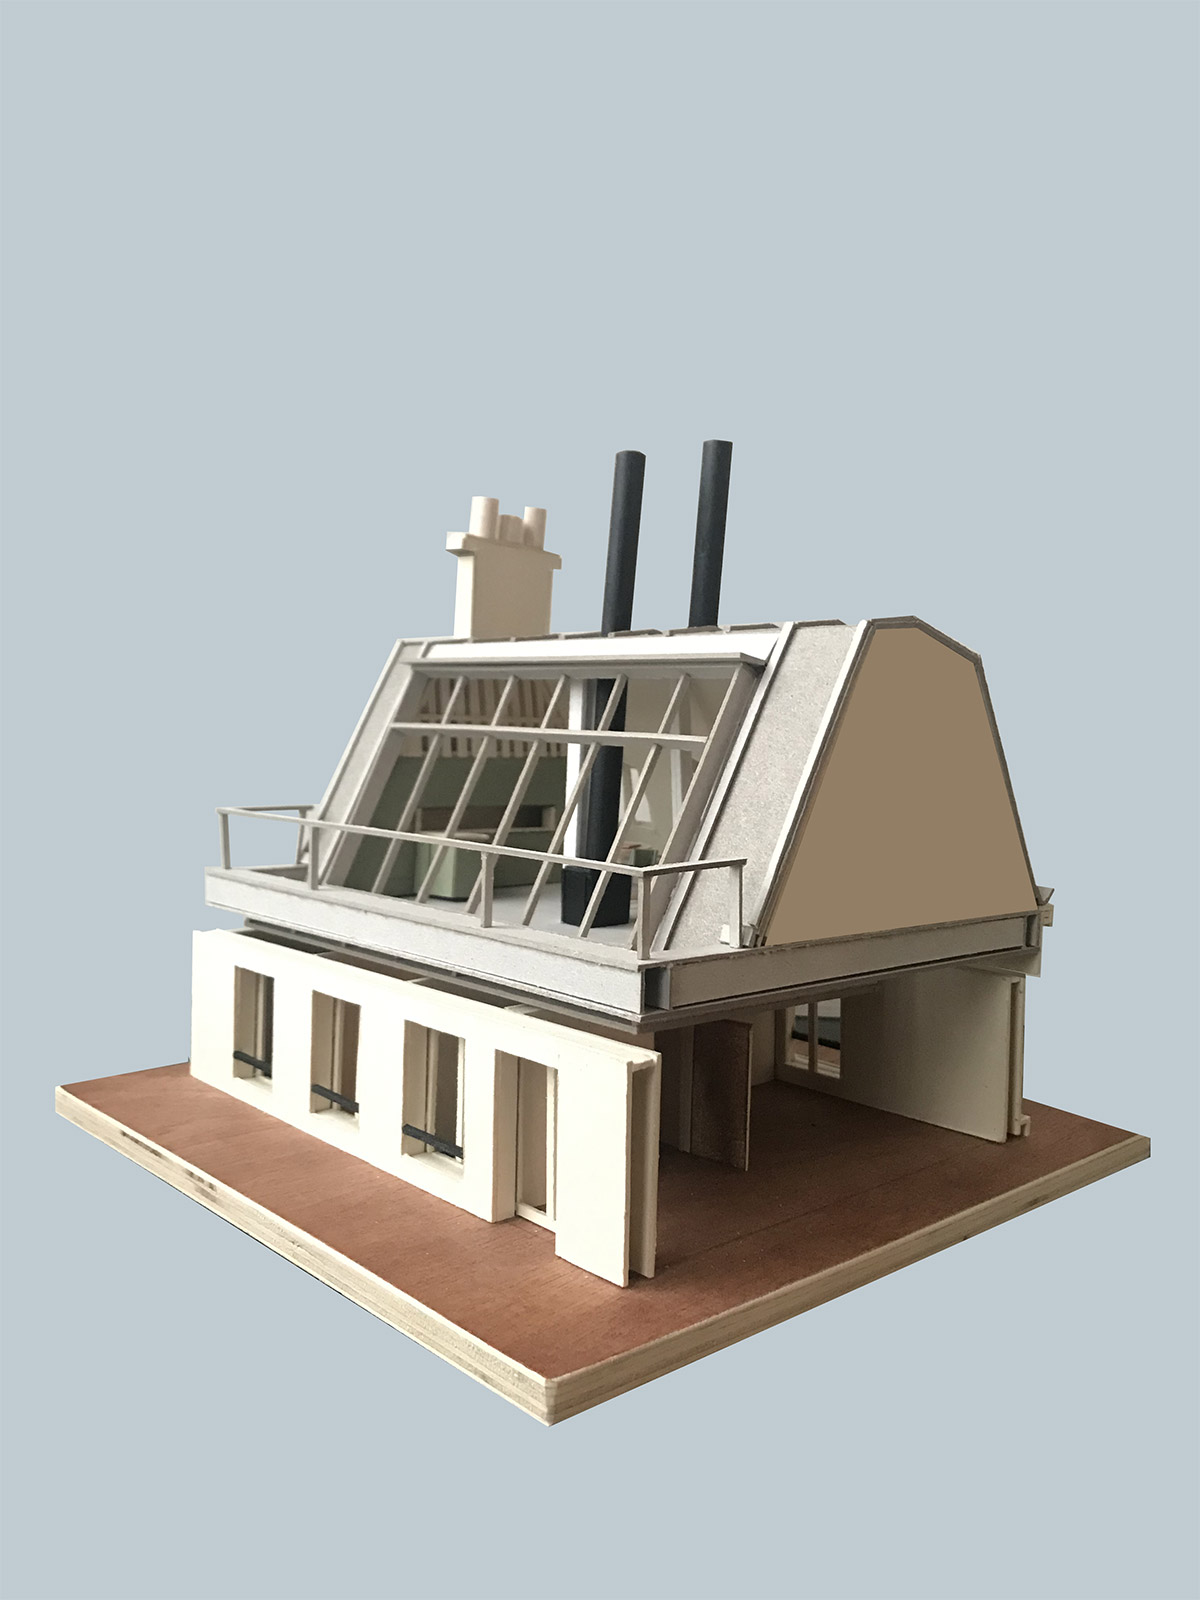 Vue de coté de la maquette du projet "la maison suspendue" : surélévation du toit d'un immeuble avec une grande baie vitrée inclinée